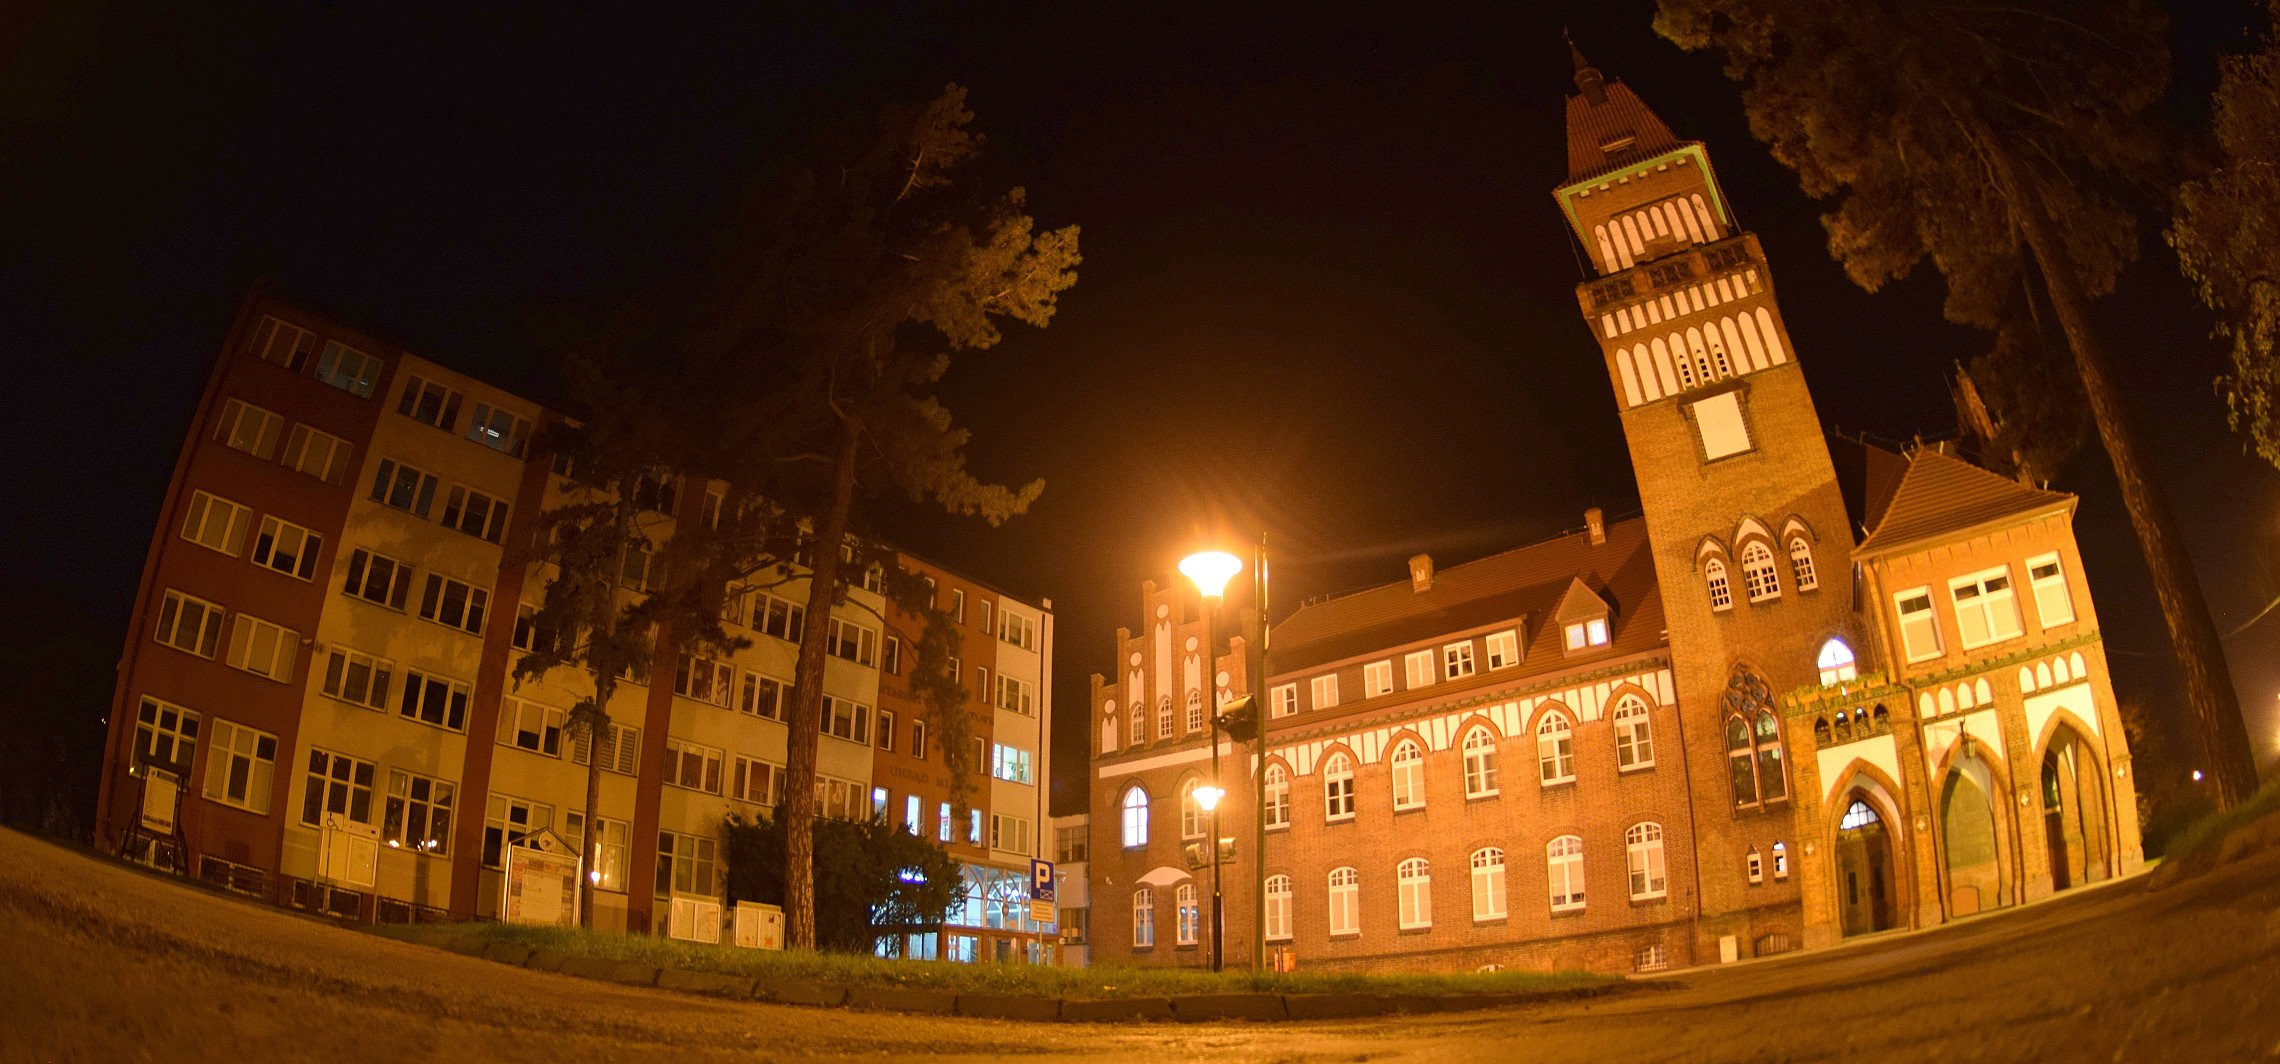 Inowrocław - Będą dezynfekować budynek starostwa